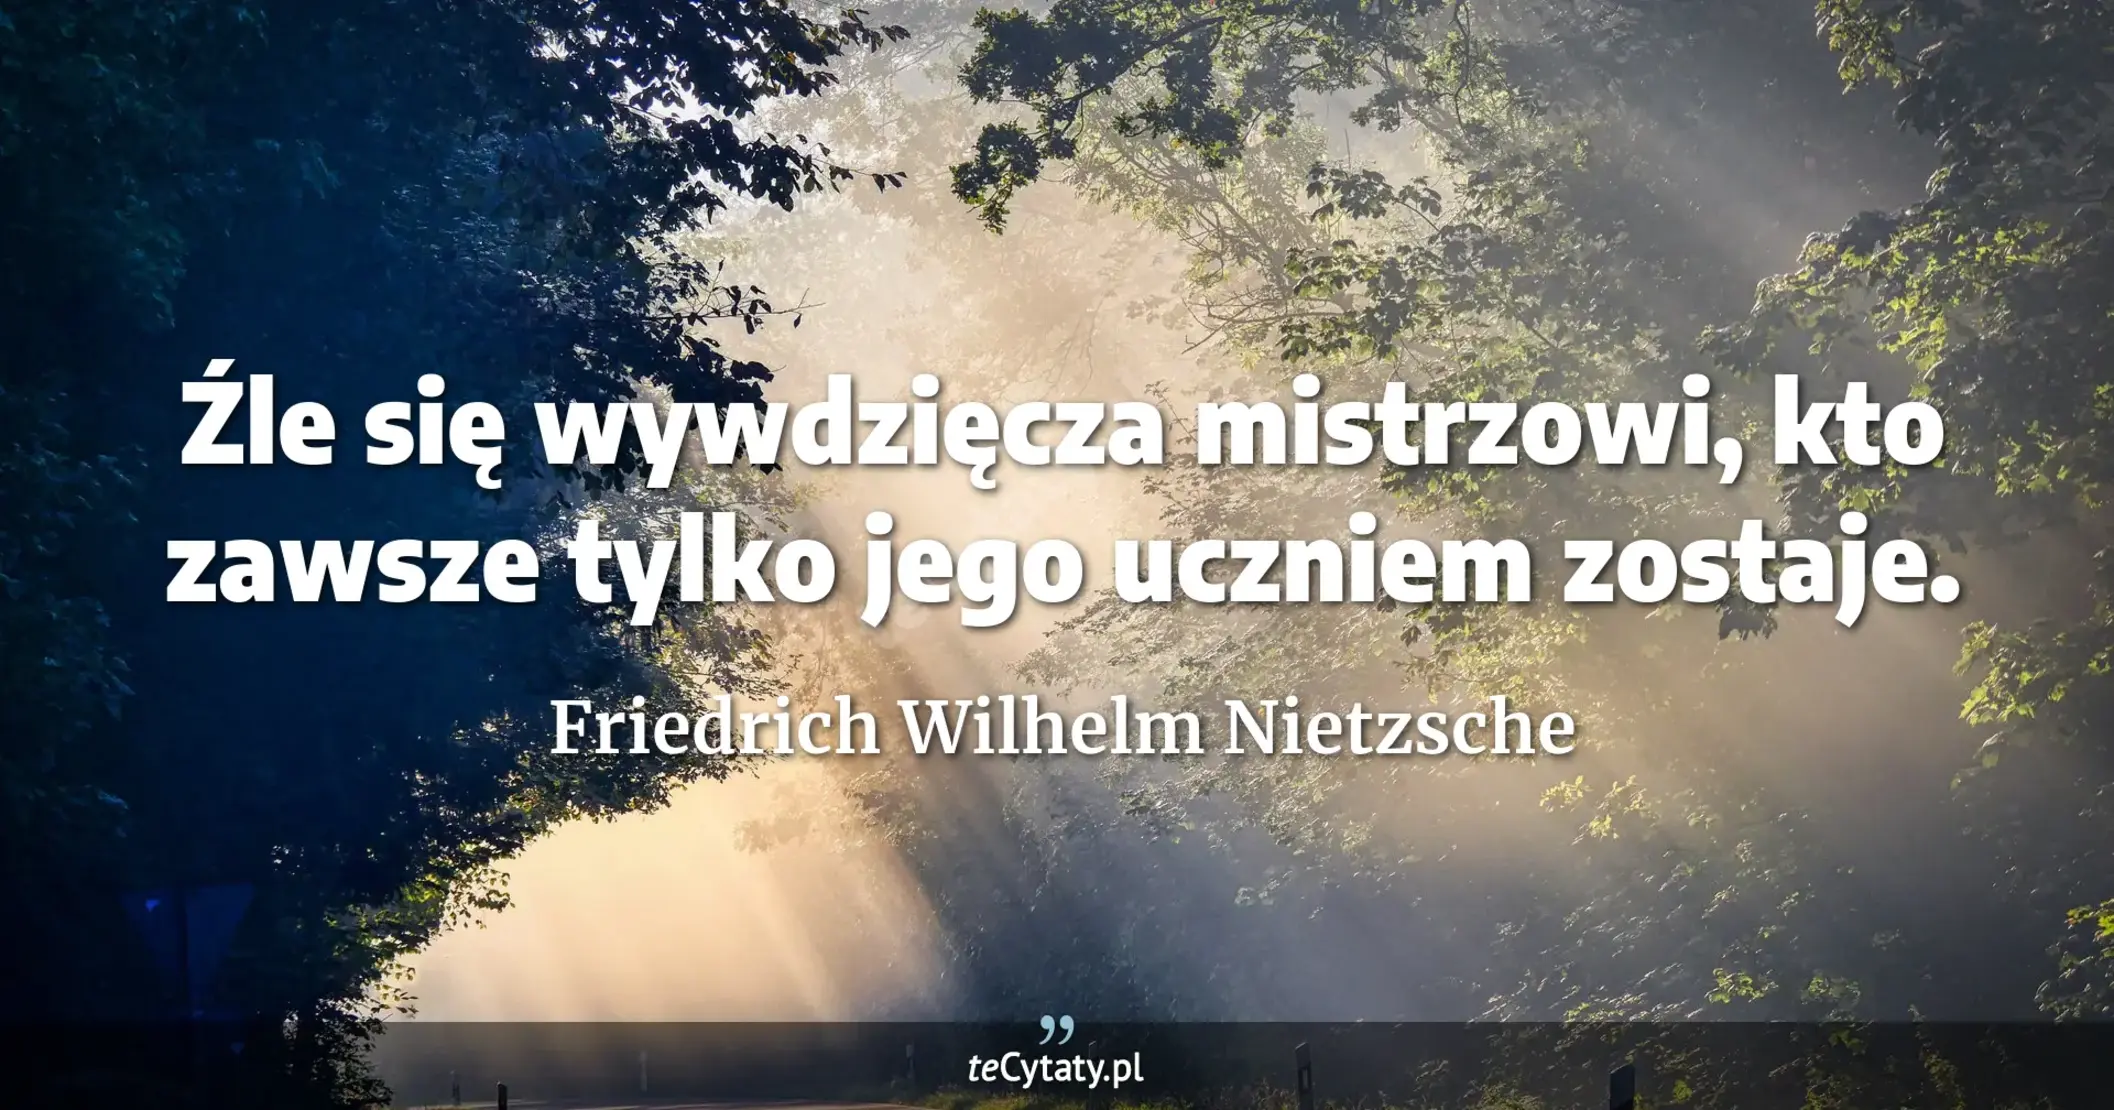 Źle się wywdzięcza mistrzowi, kto zawsze tylko jego uczniem zostaje. - Friedrich Wilhelm Nietzsche